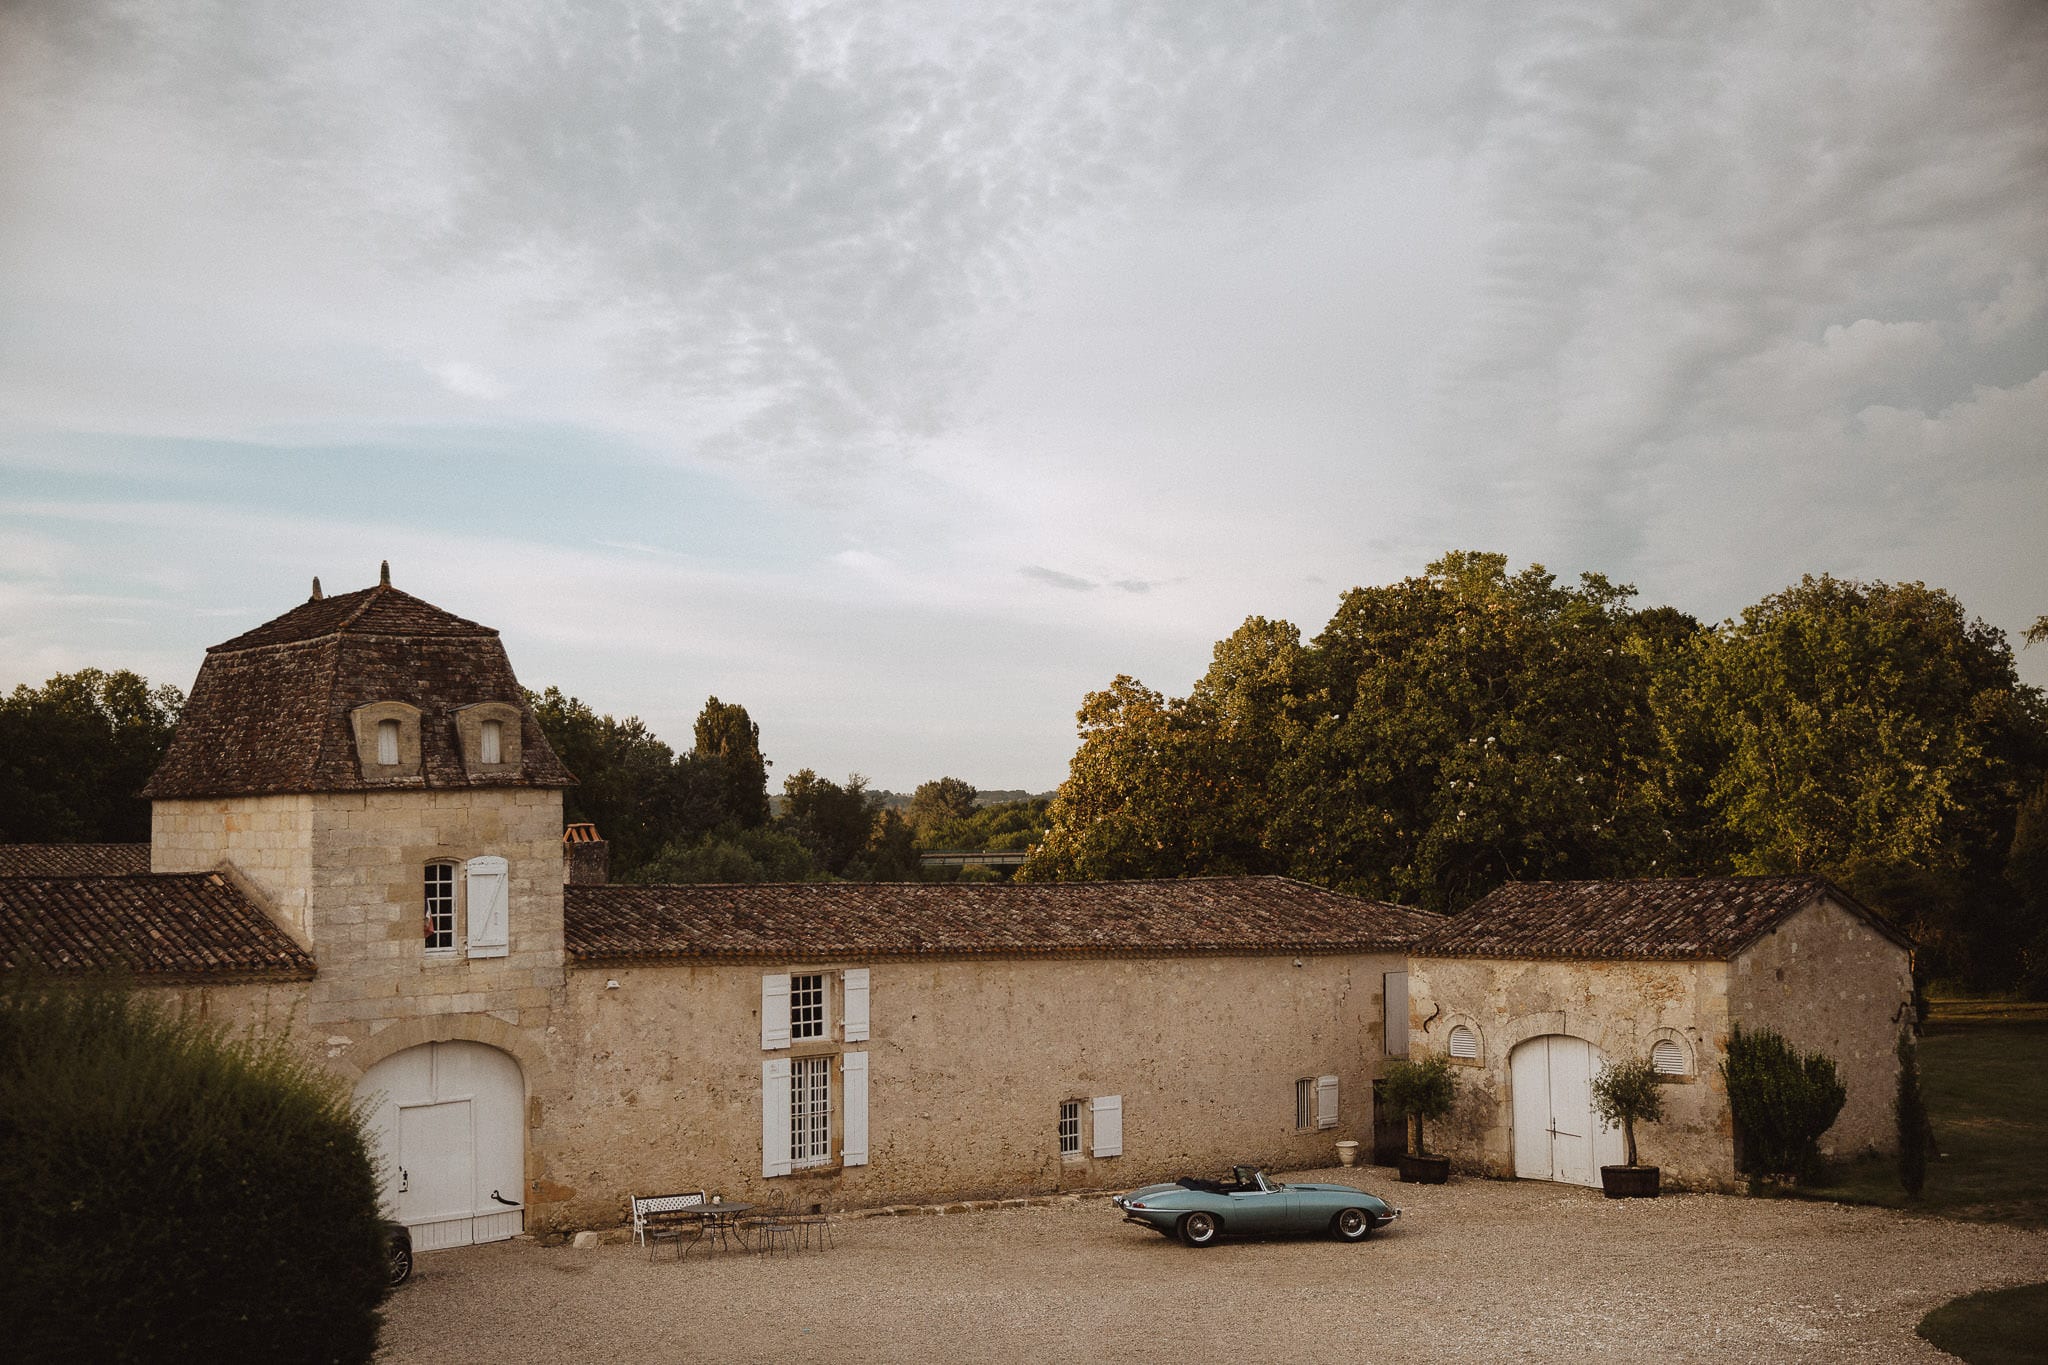 Chateau Tourbeille wedding venue, France